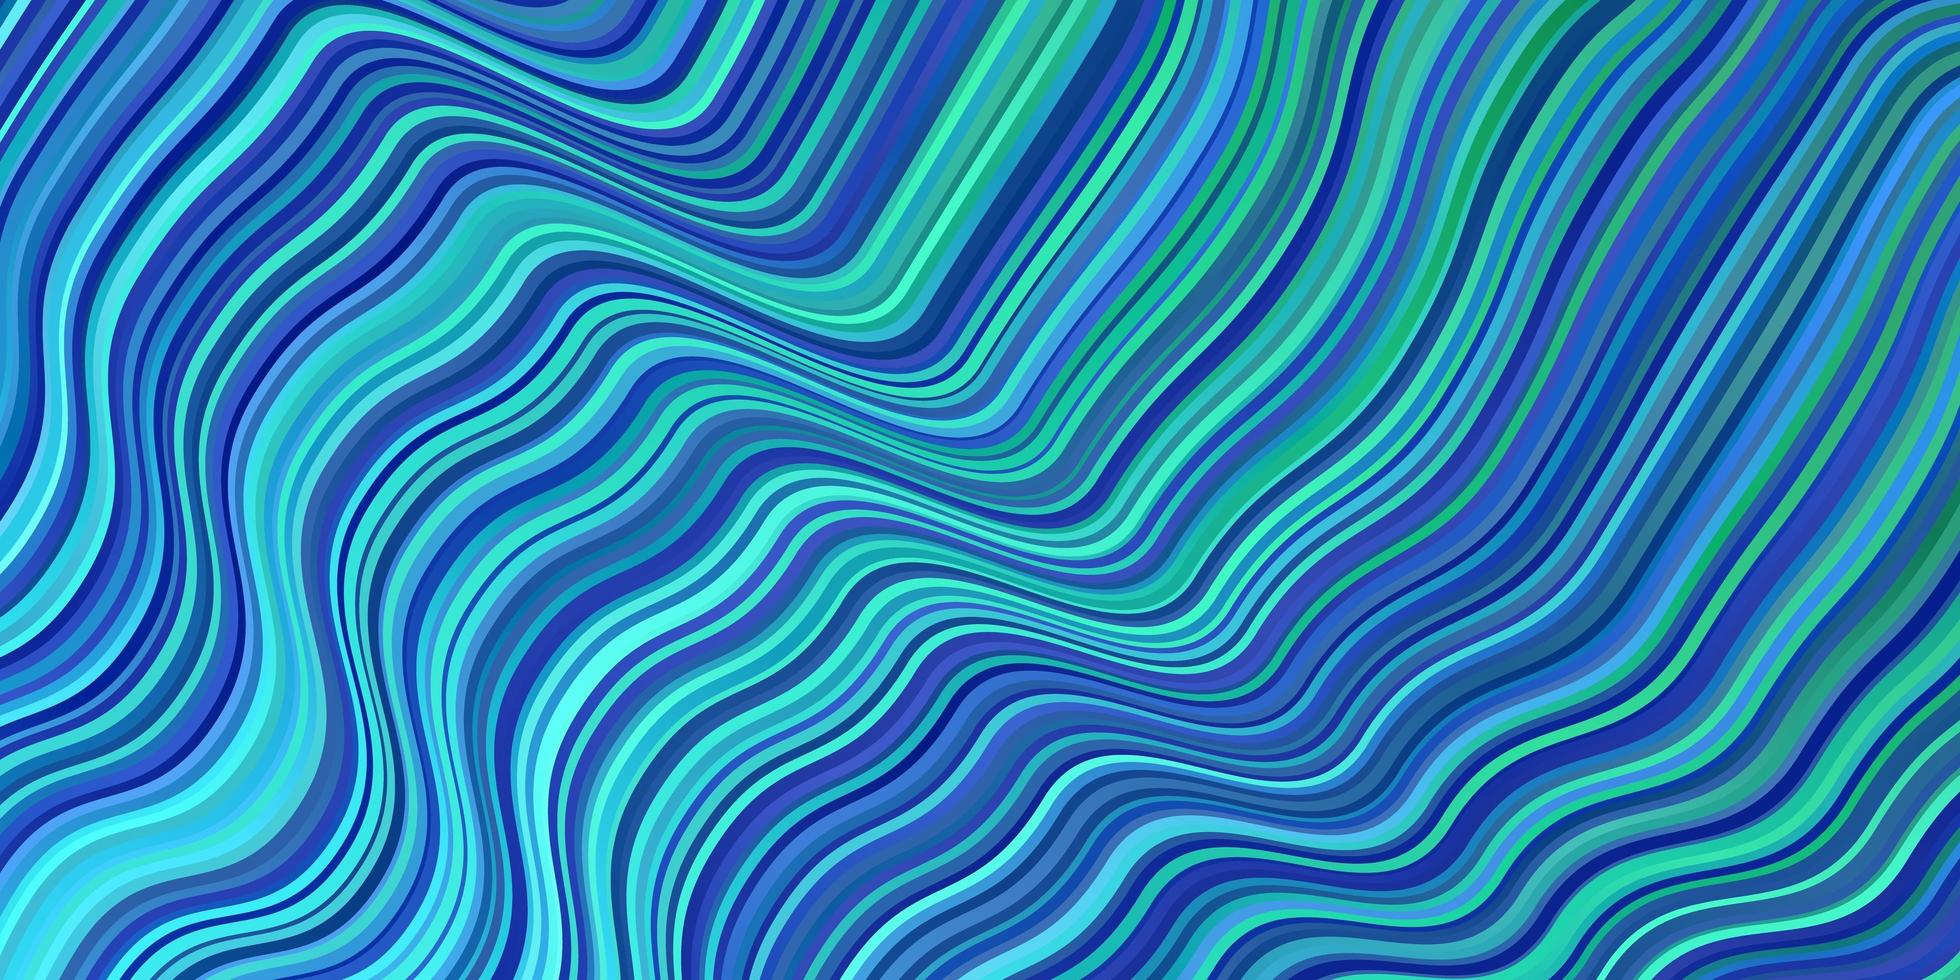 lichtblauw, groen vectorsjabloon met wrange lijnen. kleurrijke illustratie in cirkelvormige stijl met lijnen. patroon voor commercials, advertenties. vector